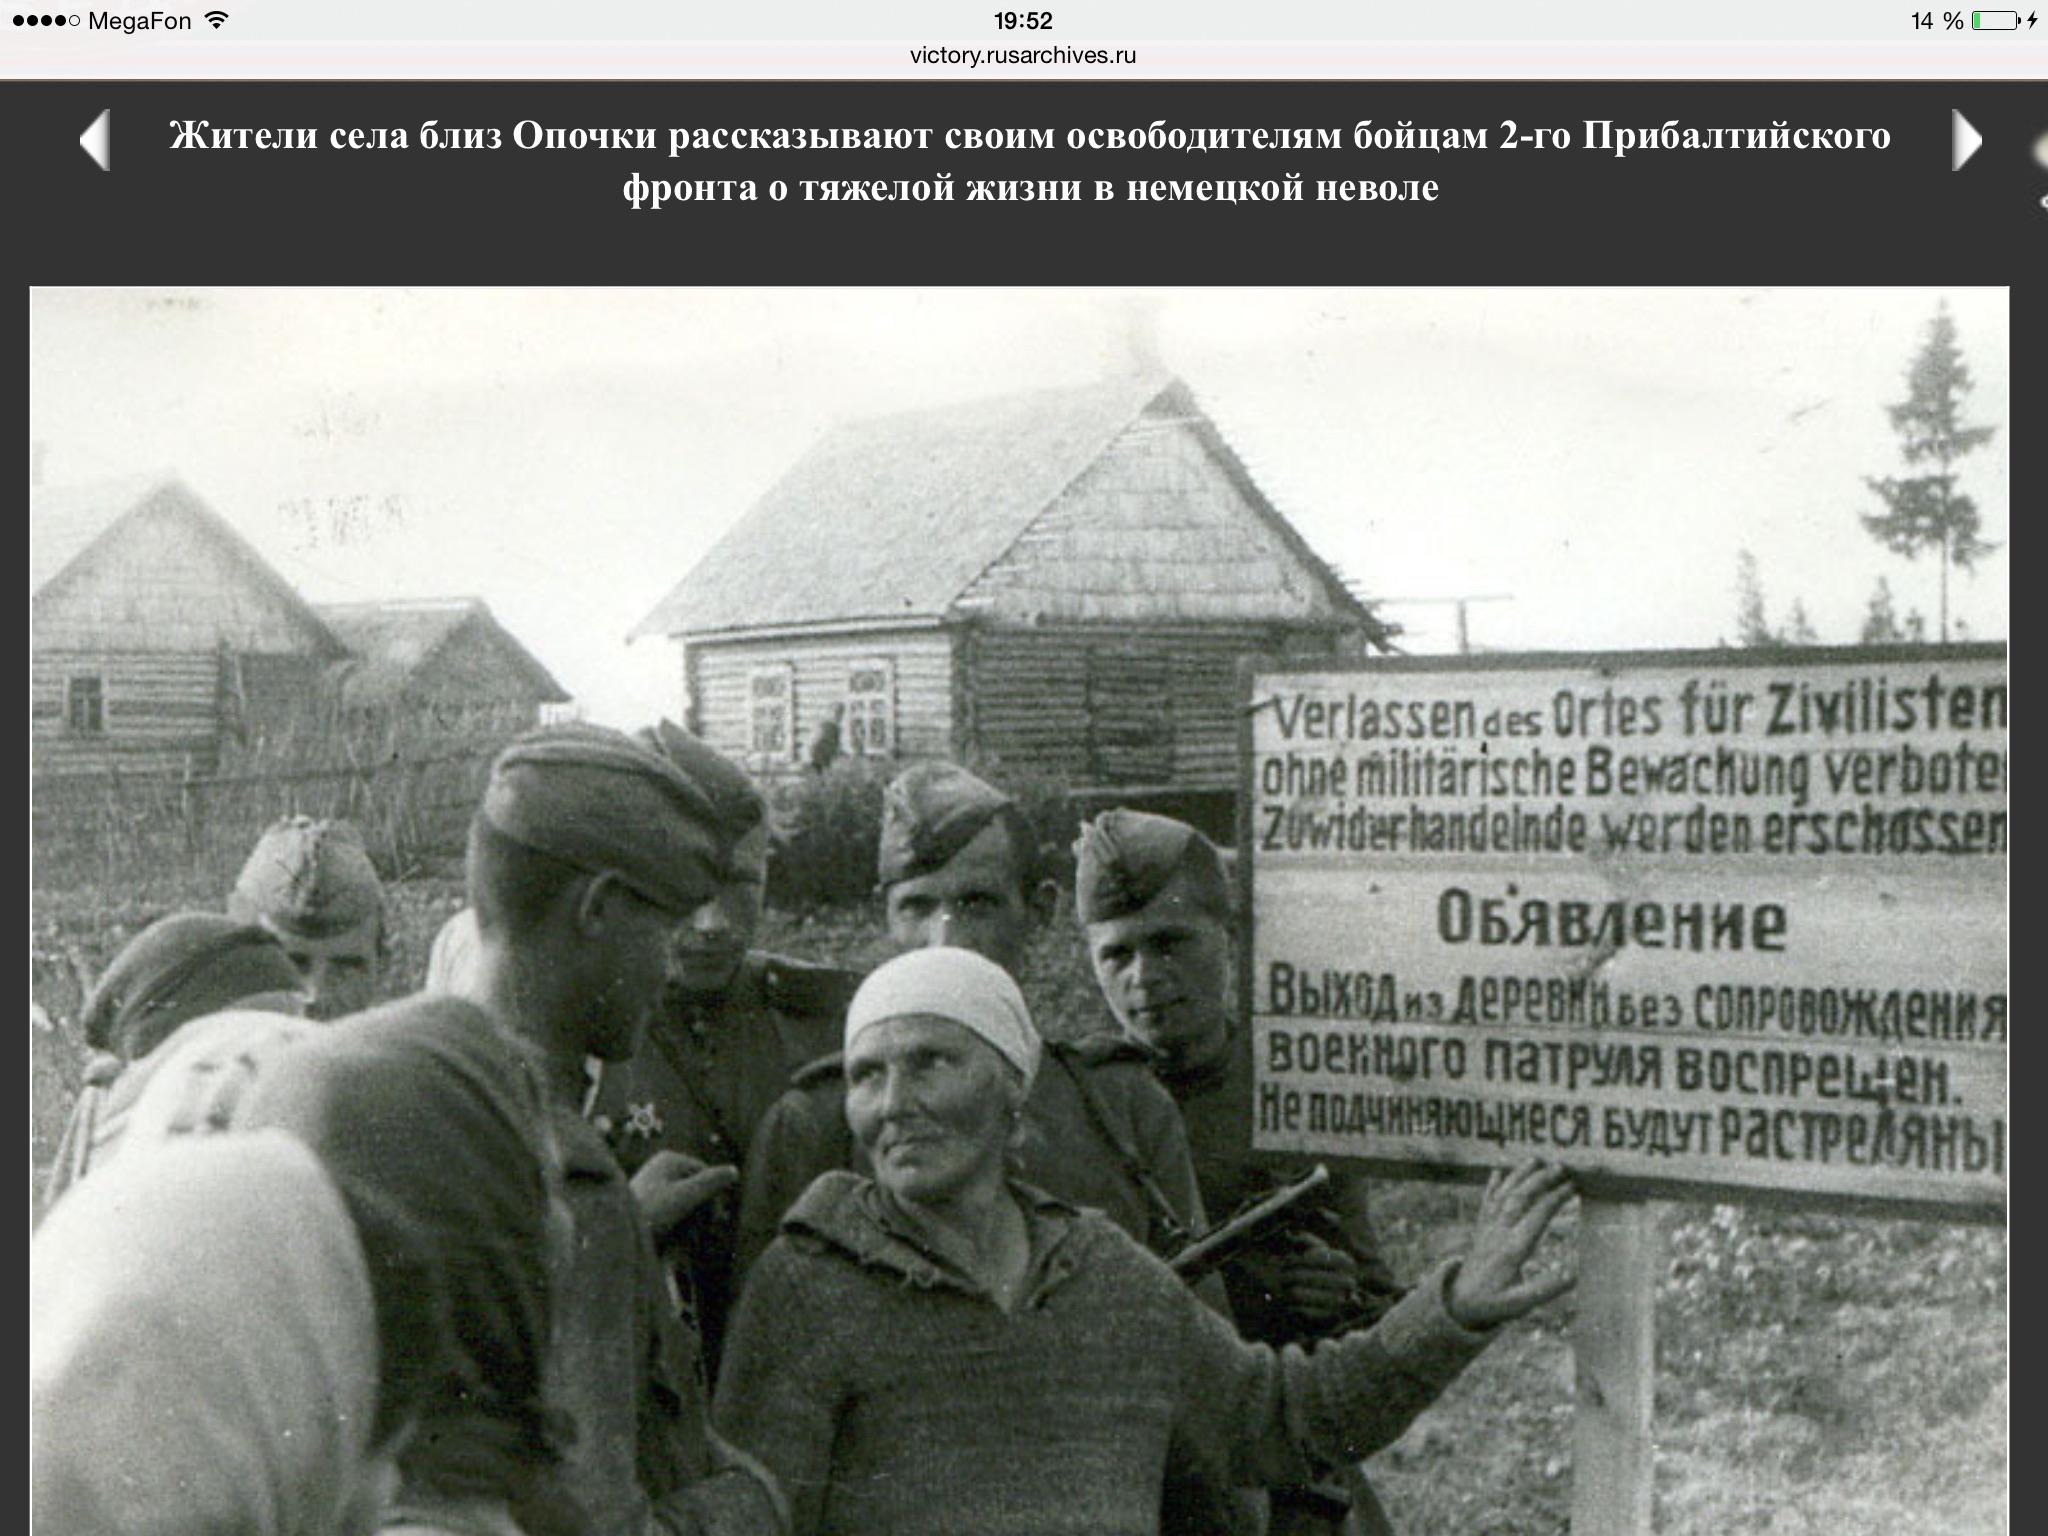 Деревня в годы Великой Отечественной войны фашисты